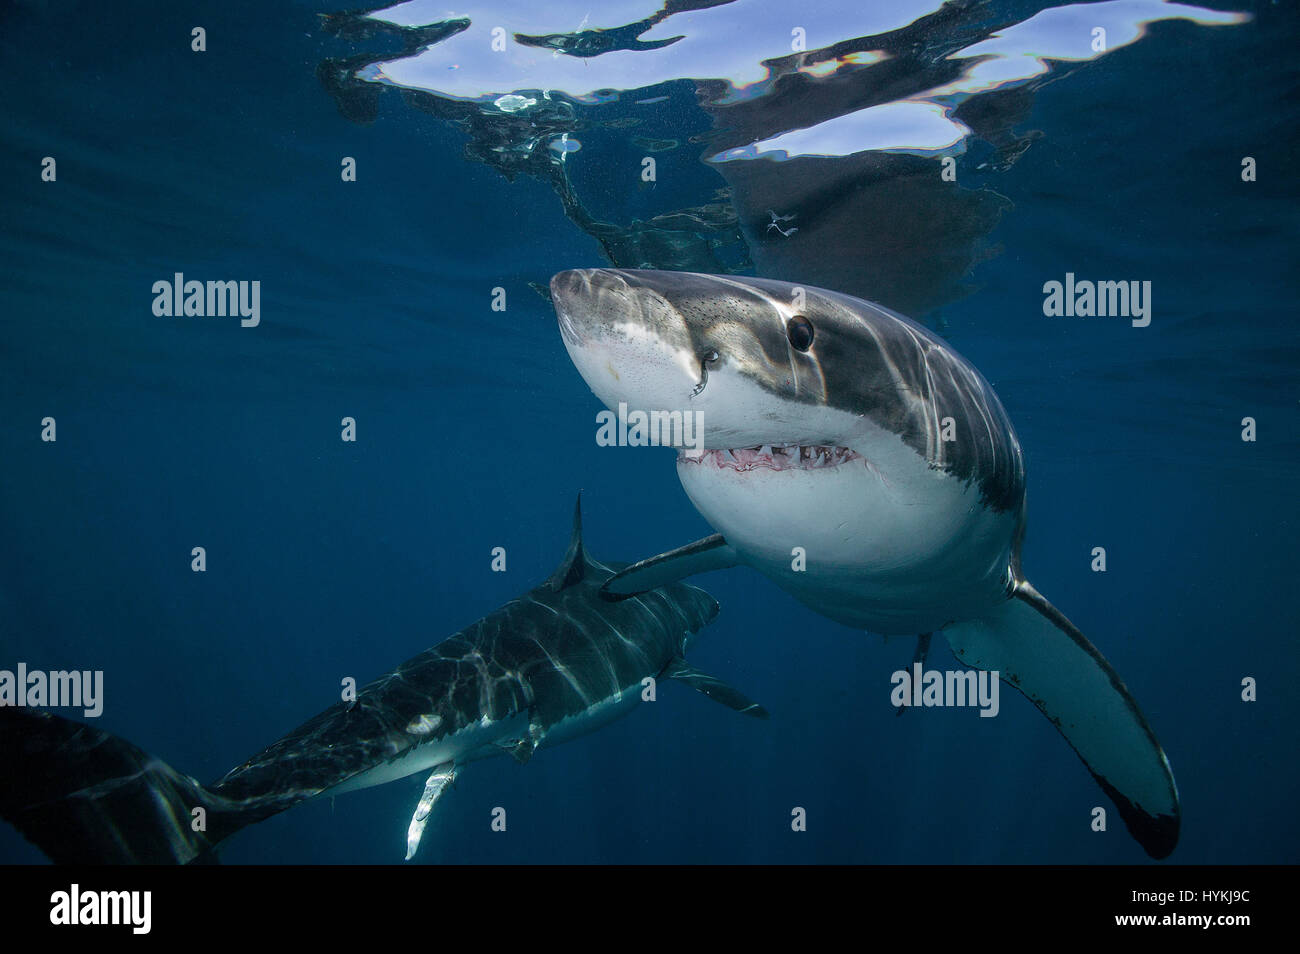 Imágenes impactantes han captado cuál podría ser el gran tiburón blanco más  grande en el mundo. El gran depredador viene cara a cara con dos buzos en  una jaula que hace mirar